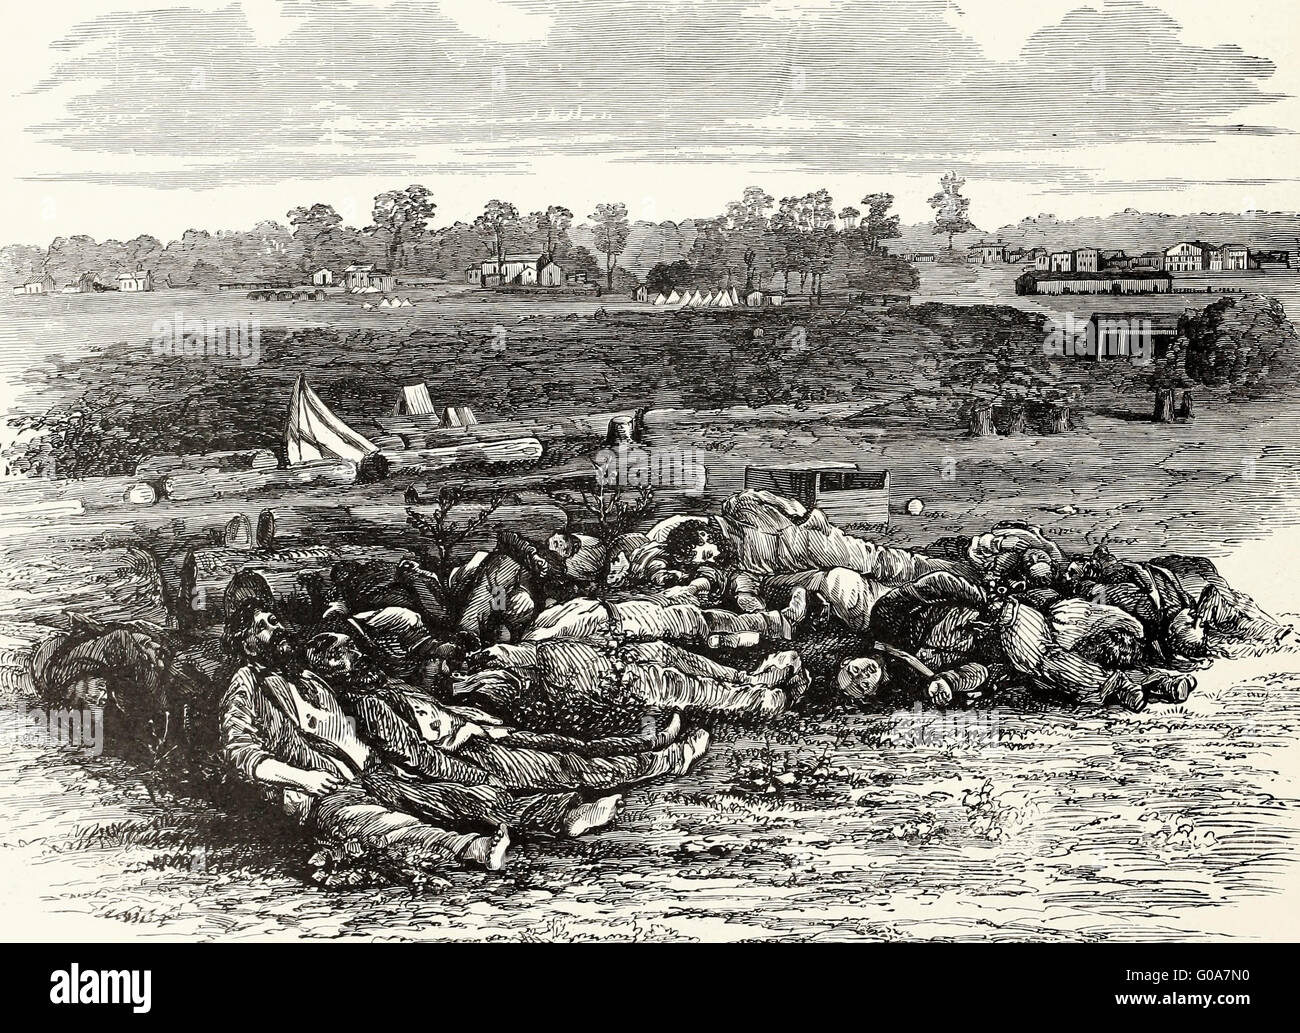 Schlacht von Corinth, Mississippi, 4. Oktober 1862 - Szene in den Kreisverkehren Fort Robinett nach dem Repulse die Eidgenossen. USA Bürgerkrieg Stockfoto